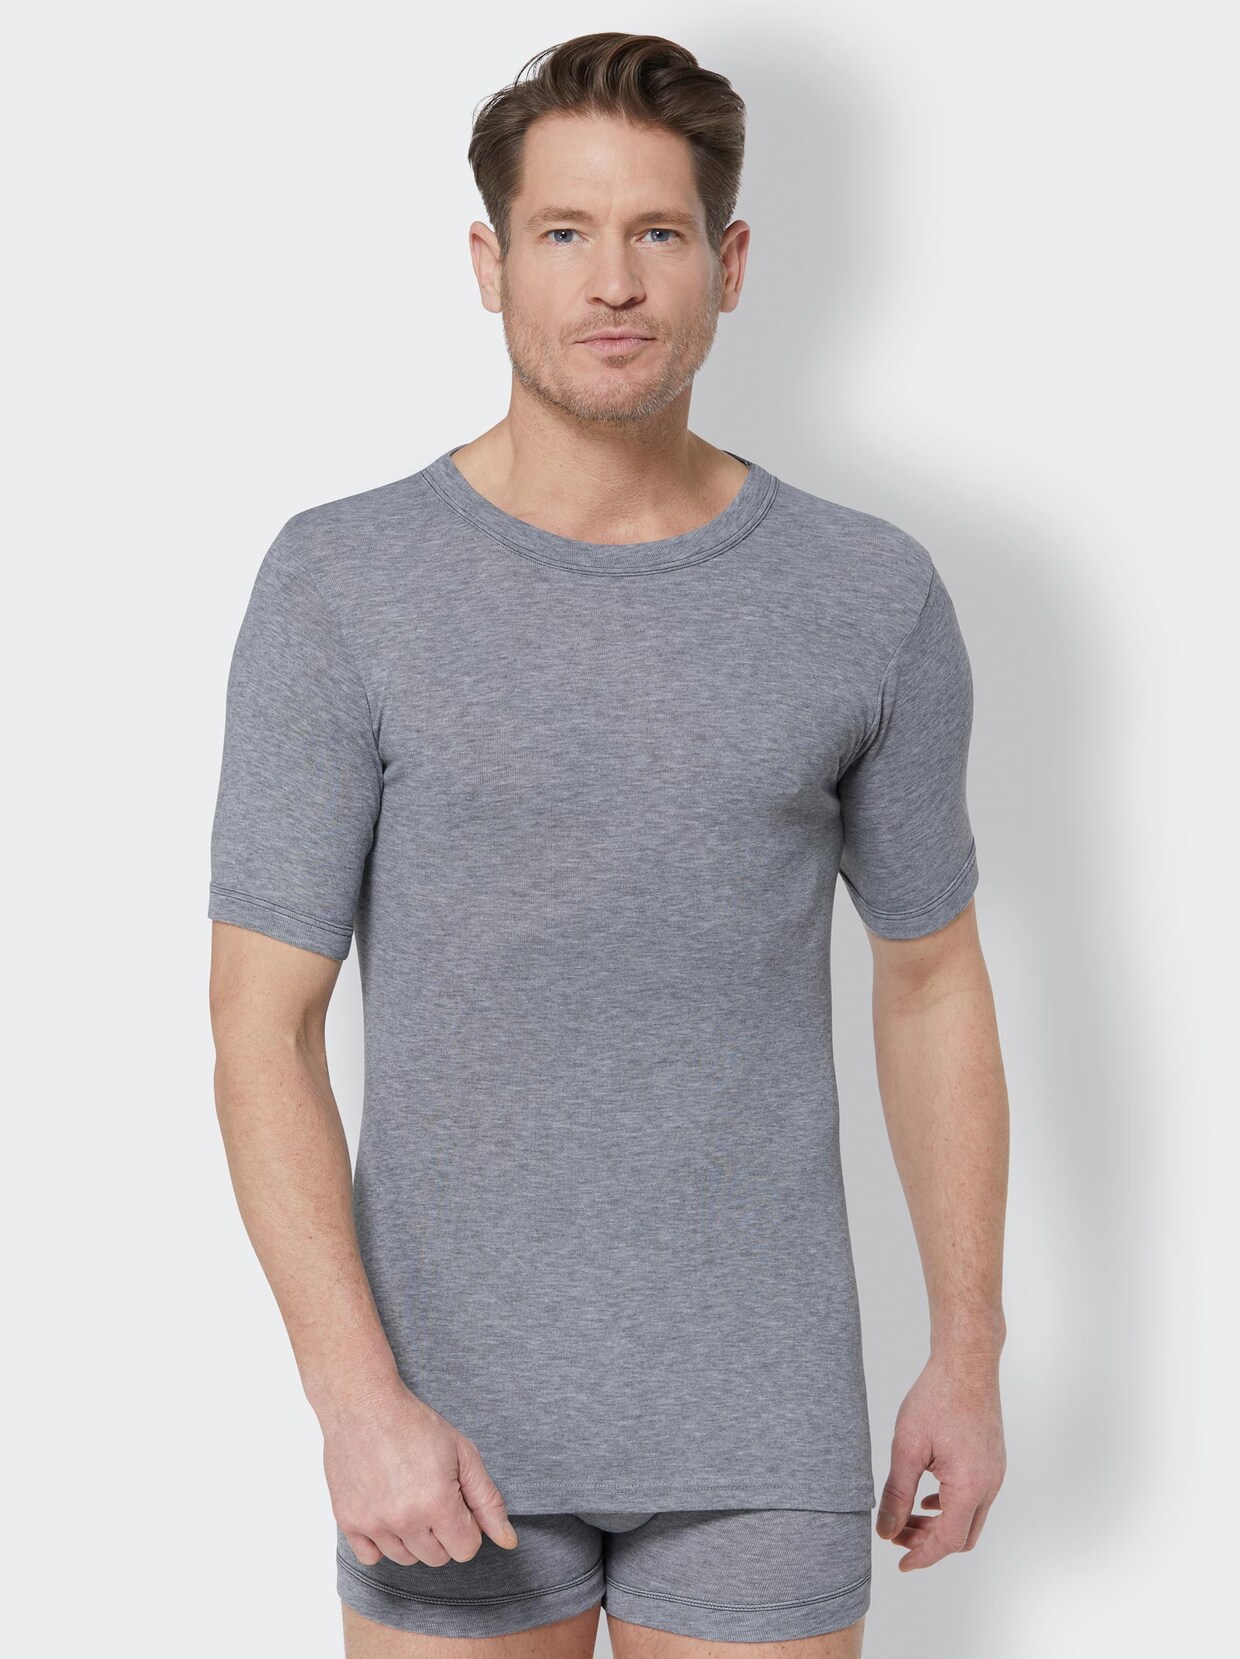 Kumpf Shirt - grau-meliert